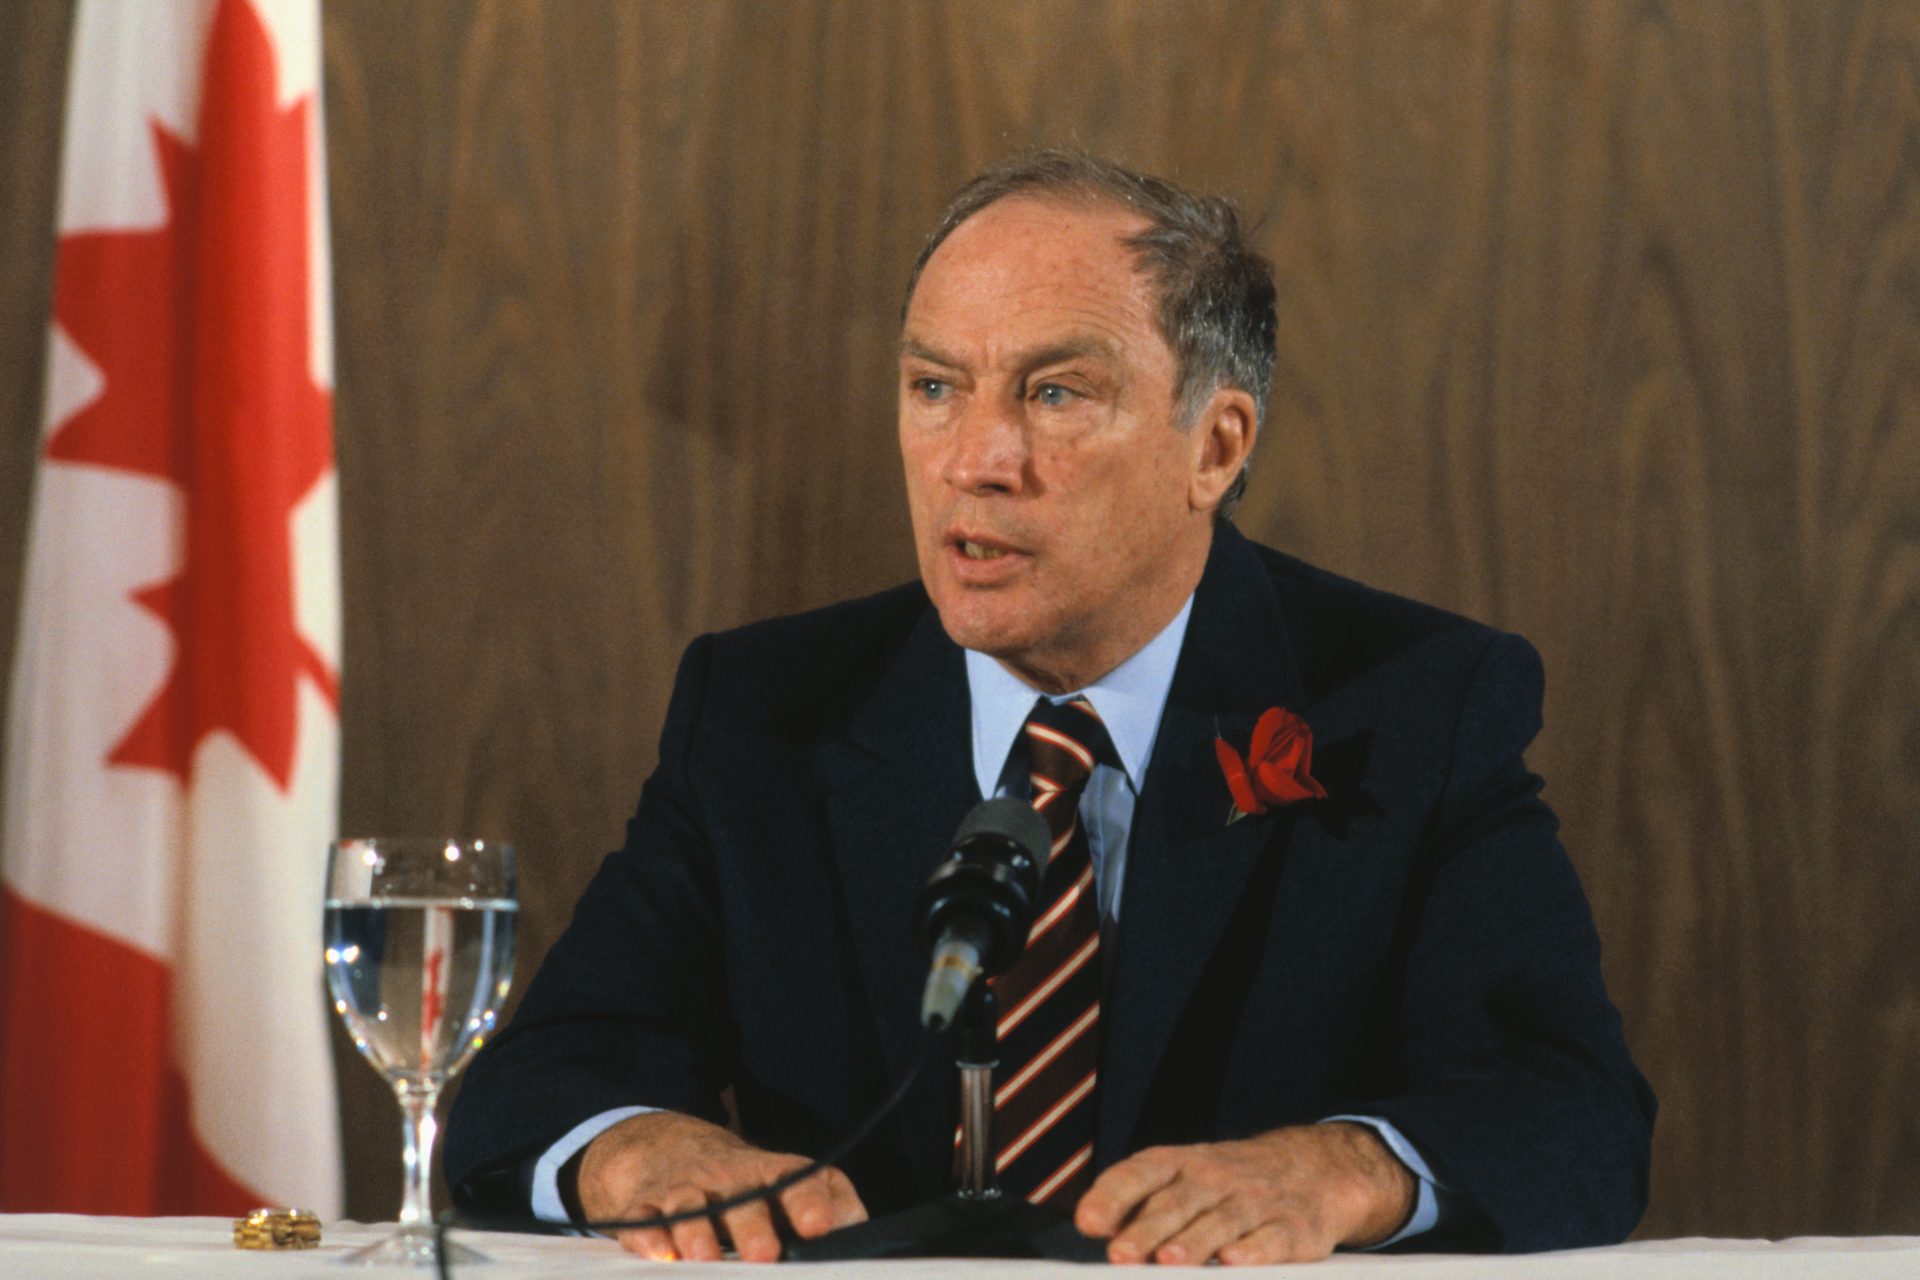 5. Pierre Trudeau (1968 bis 1984)